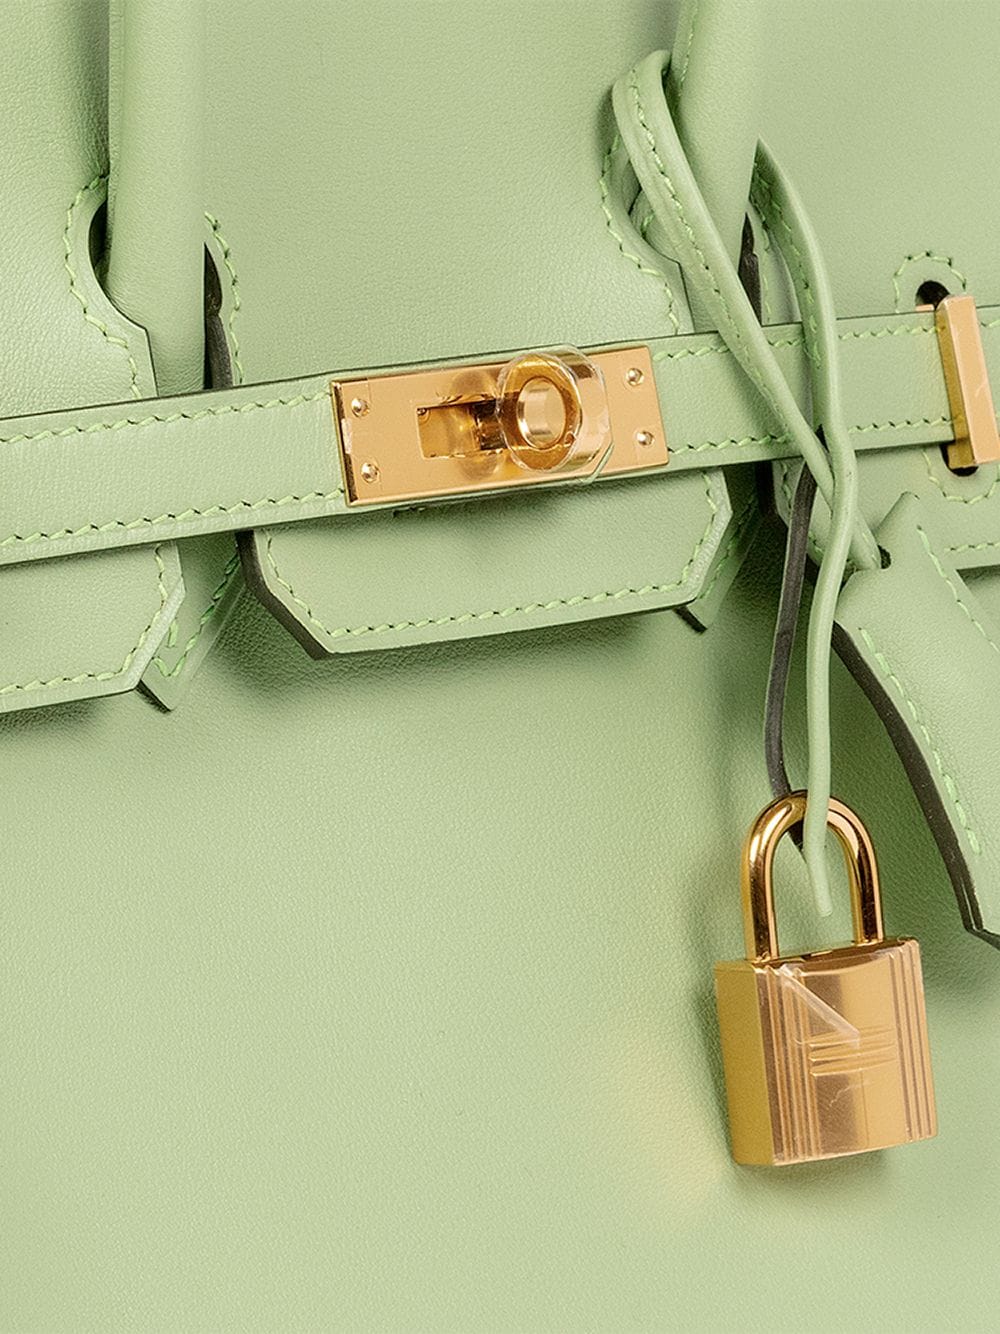 Birkin 25 Hermès Handbags for Women - Vestiaire Collective